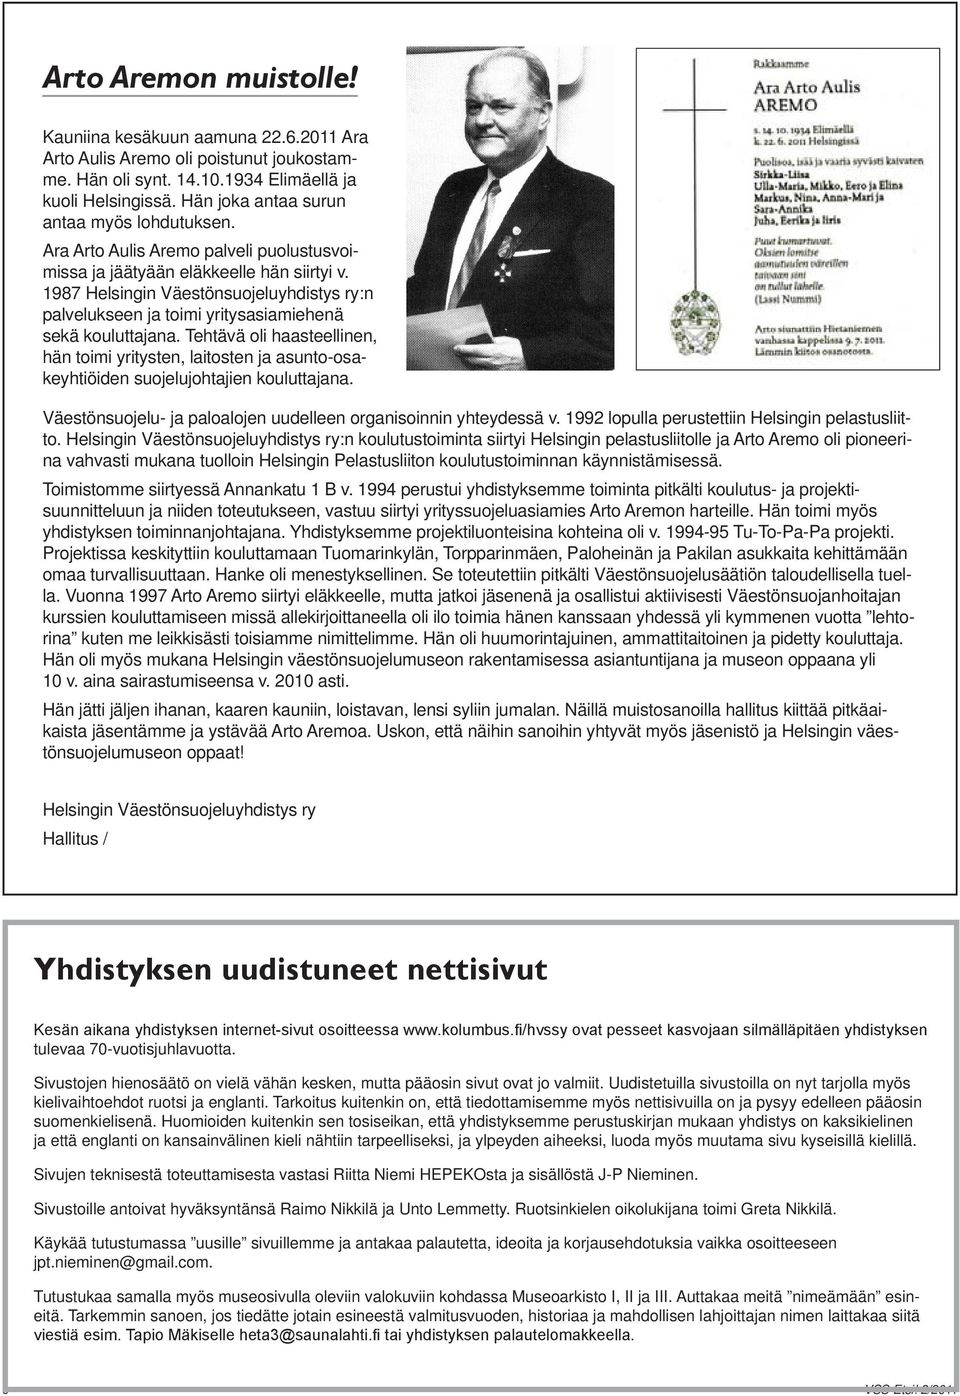 1987 Helsingin Väestönsuojeluyhdistys ry:n palvelukseen ja toimi yritysasiamiehenä sekä kouluttajana.